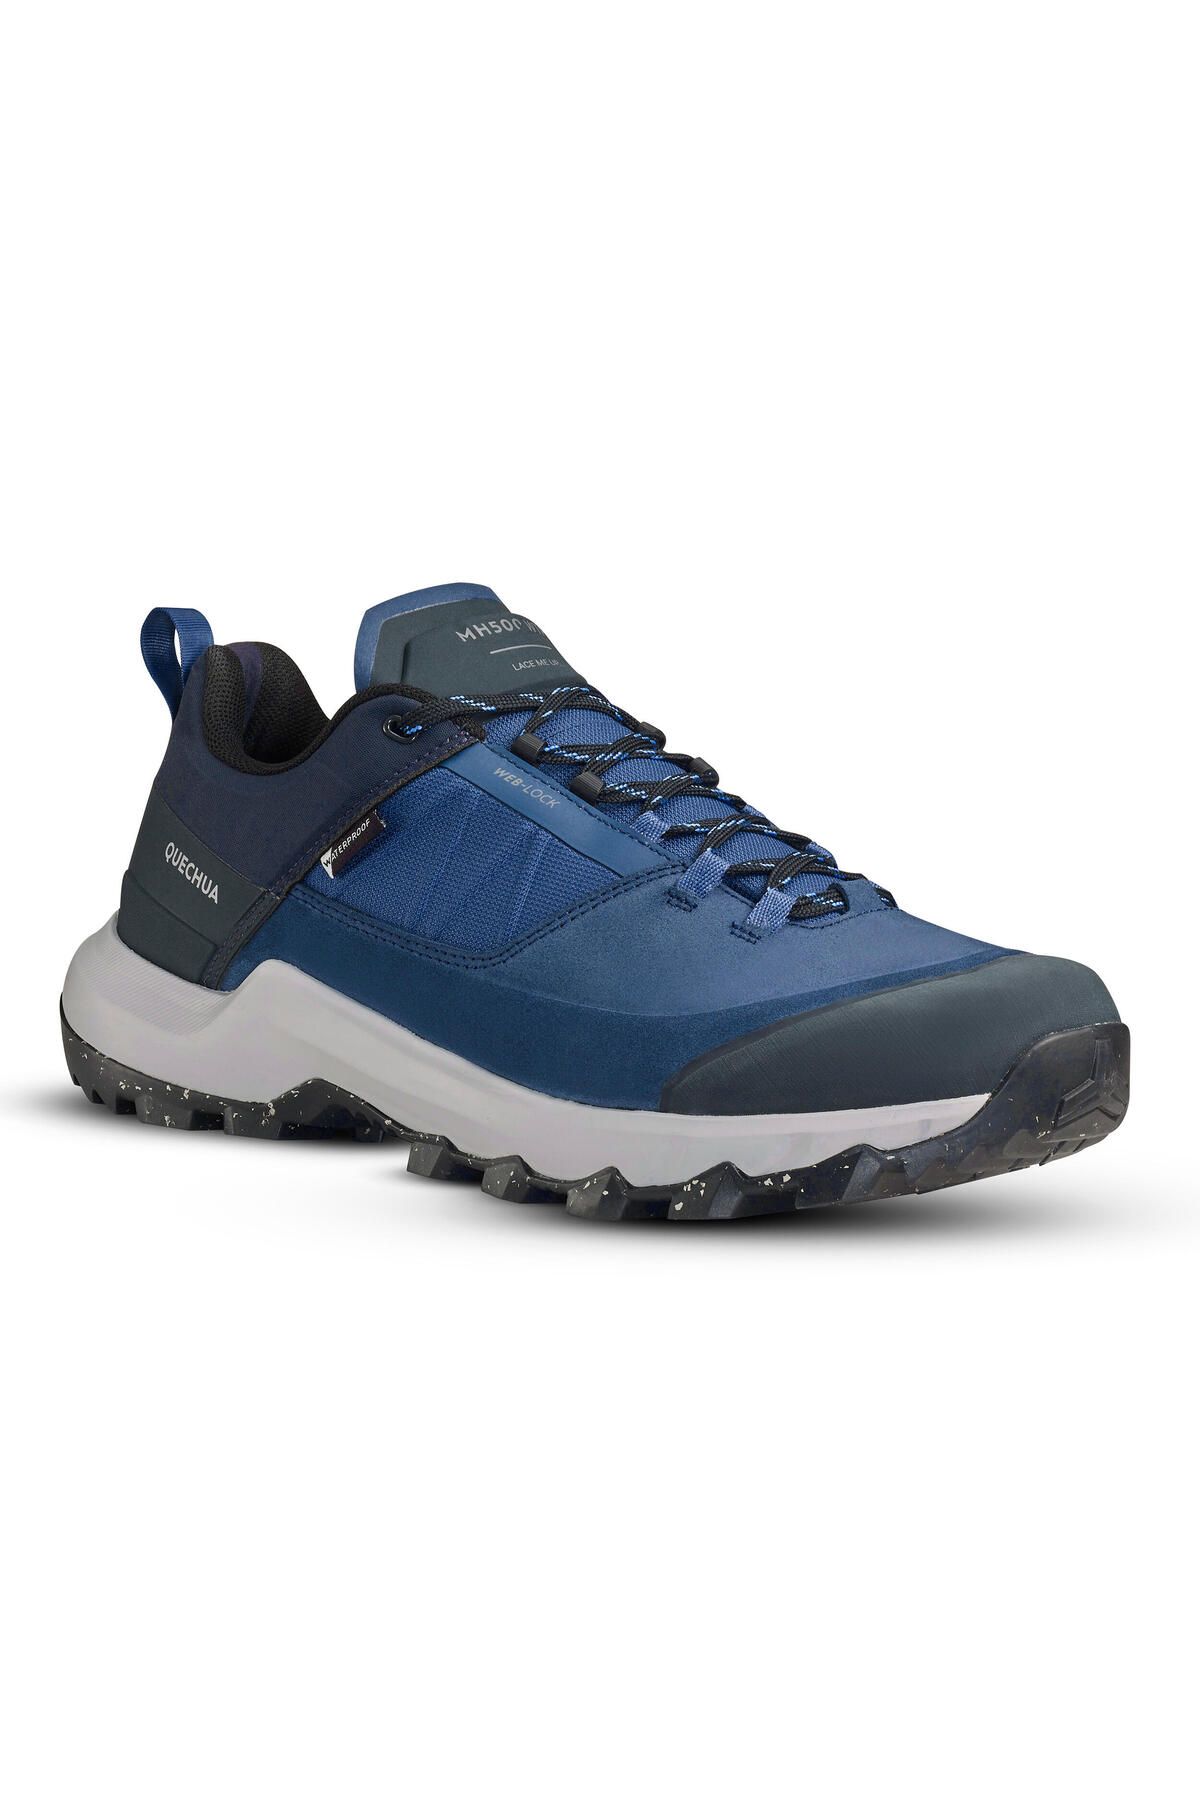 Decathlon Erkek Doğa Yürüyüşü Ayakkabısı - Mavi - Mh500